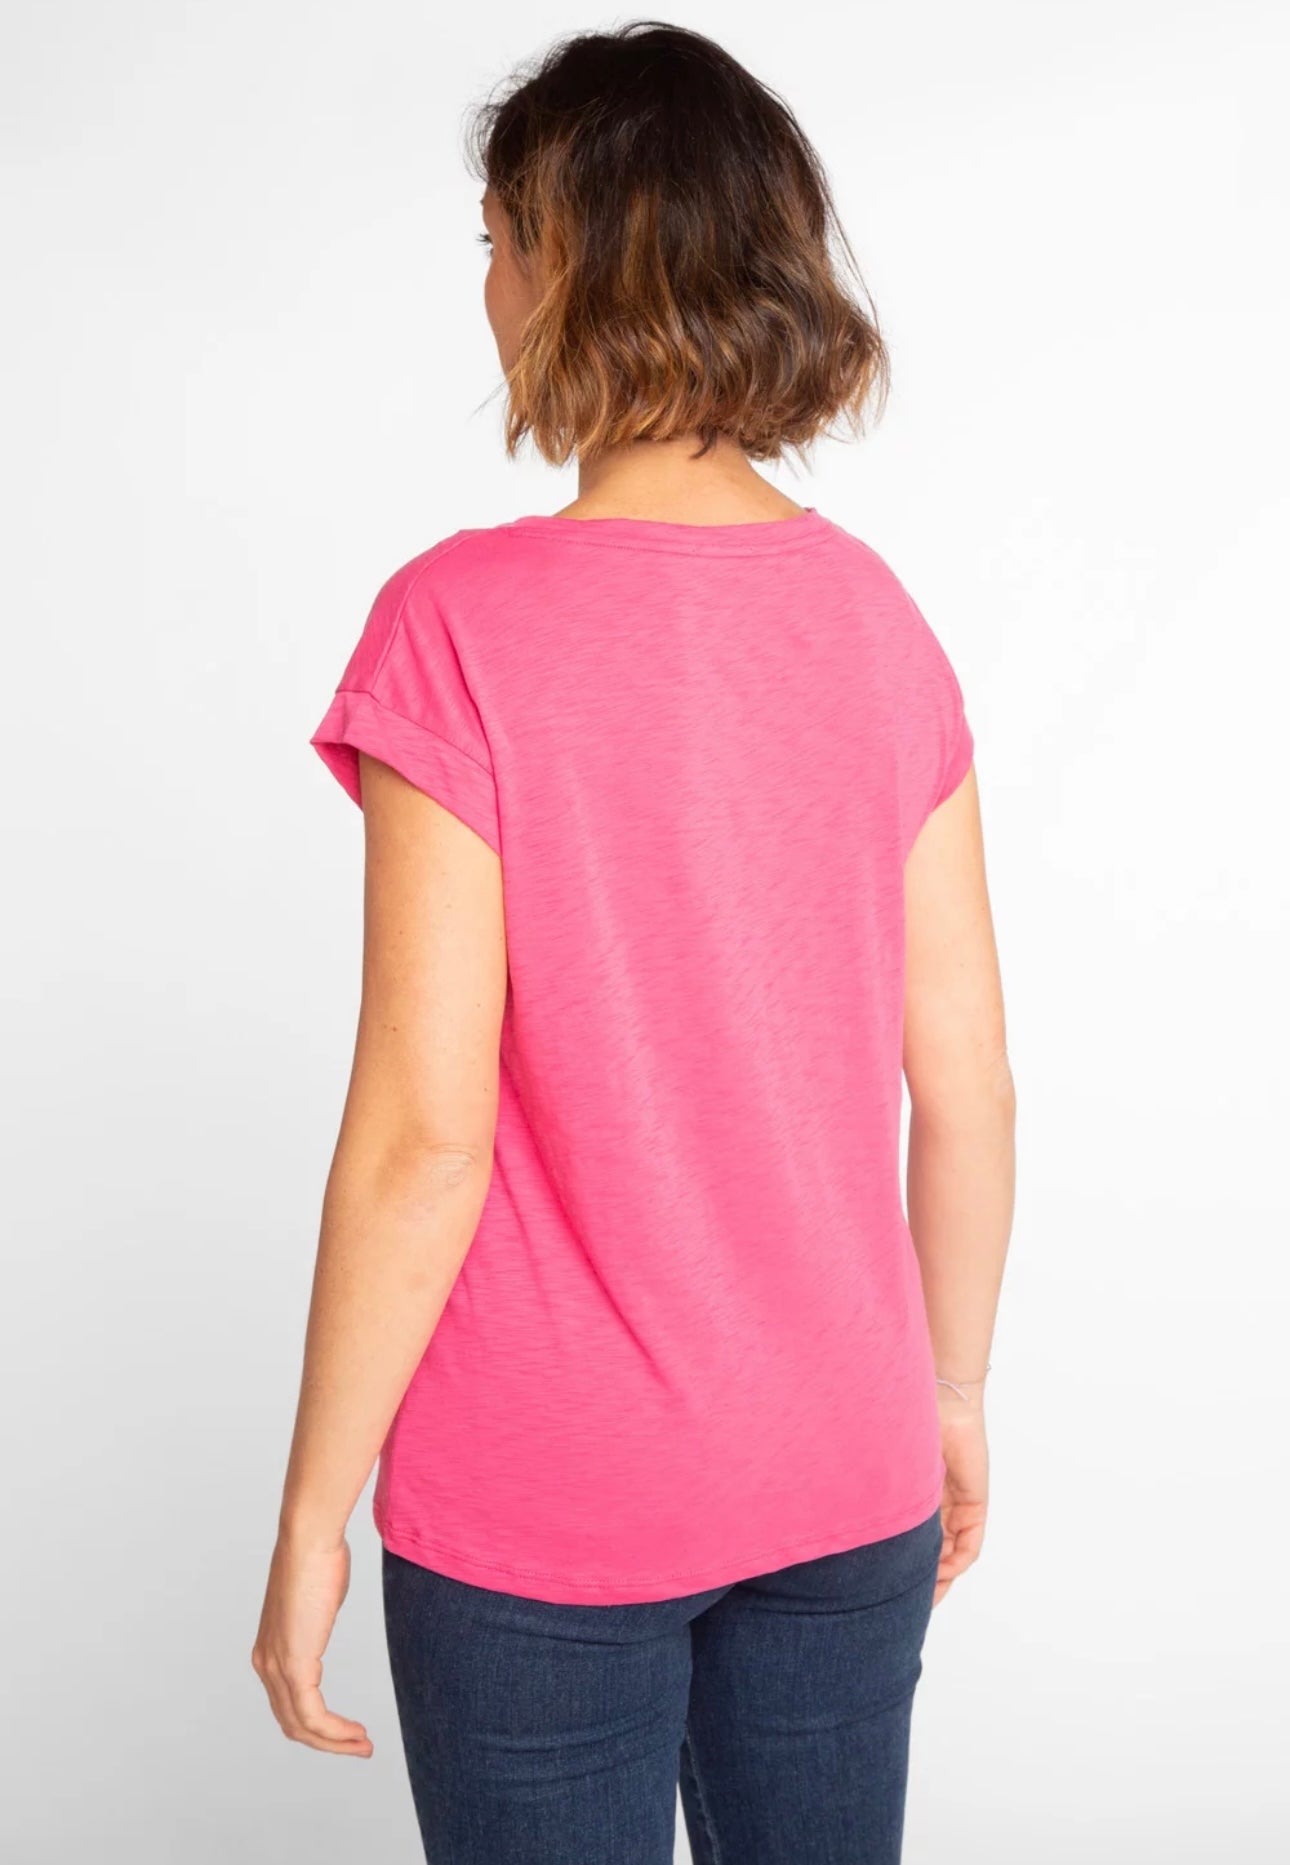 Anonym - T-shirt Noelia 100% Cotone PIMA Peruviano Pink